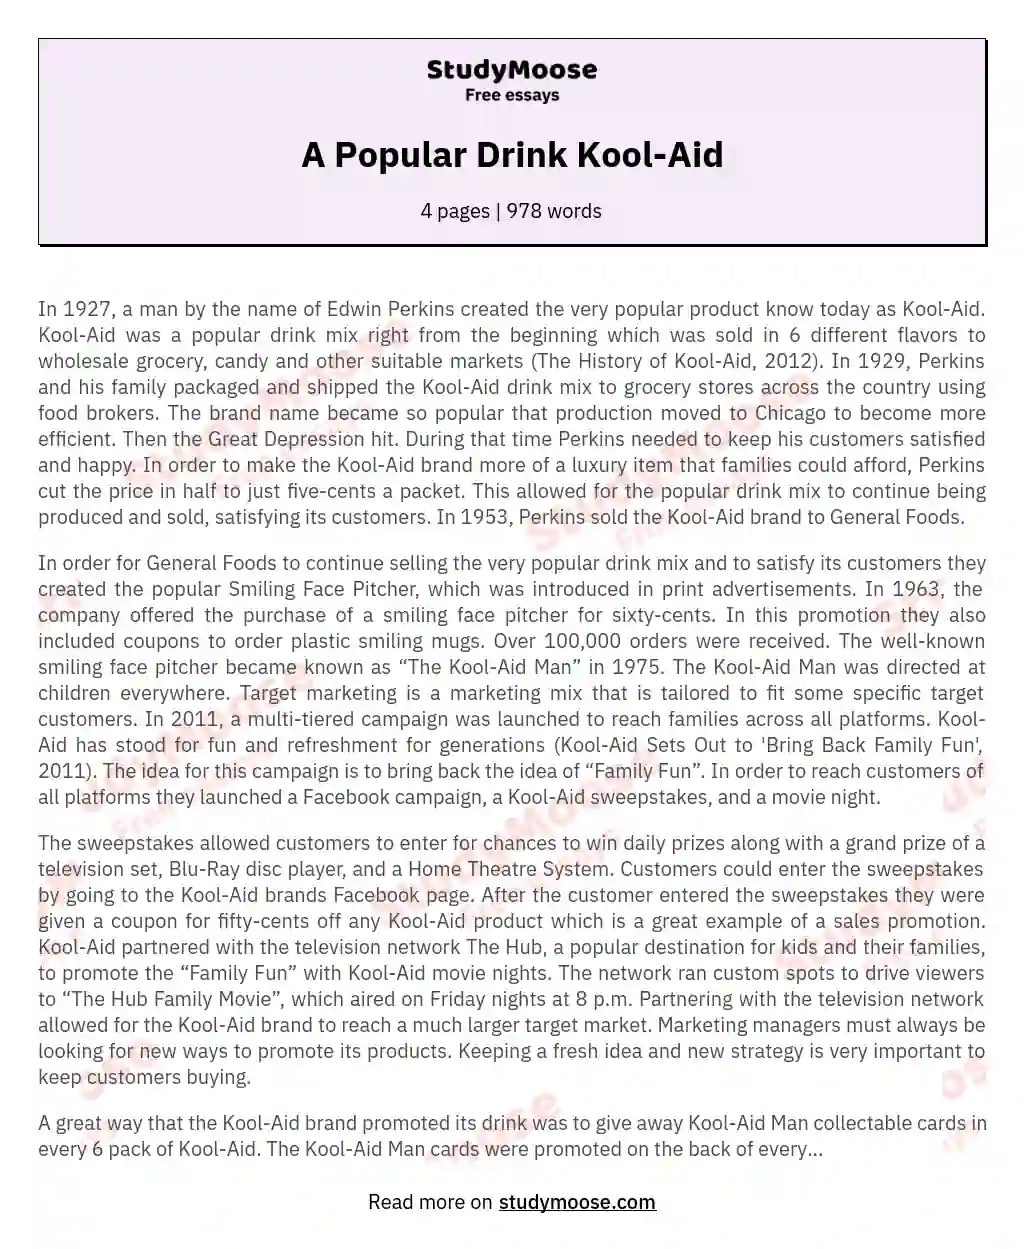 A Popular Drink Kool-Aid essay